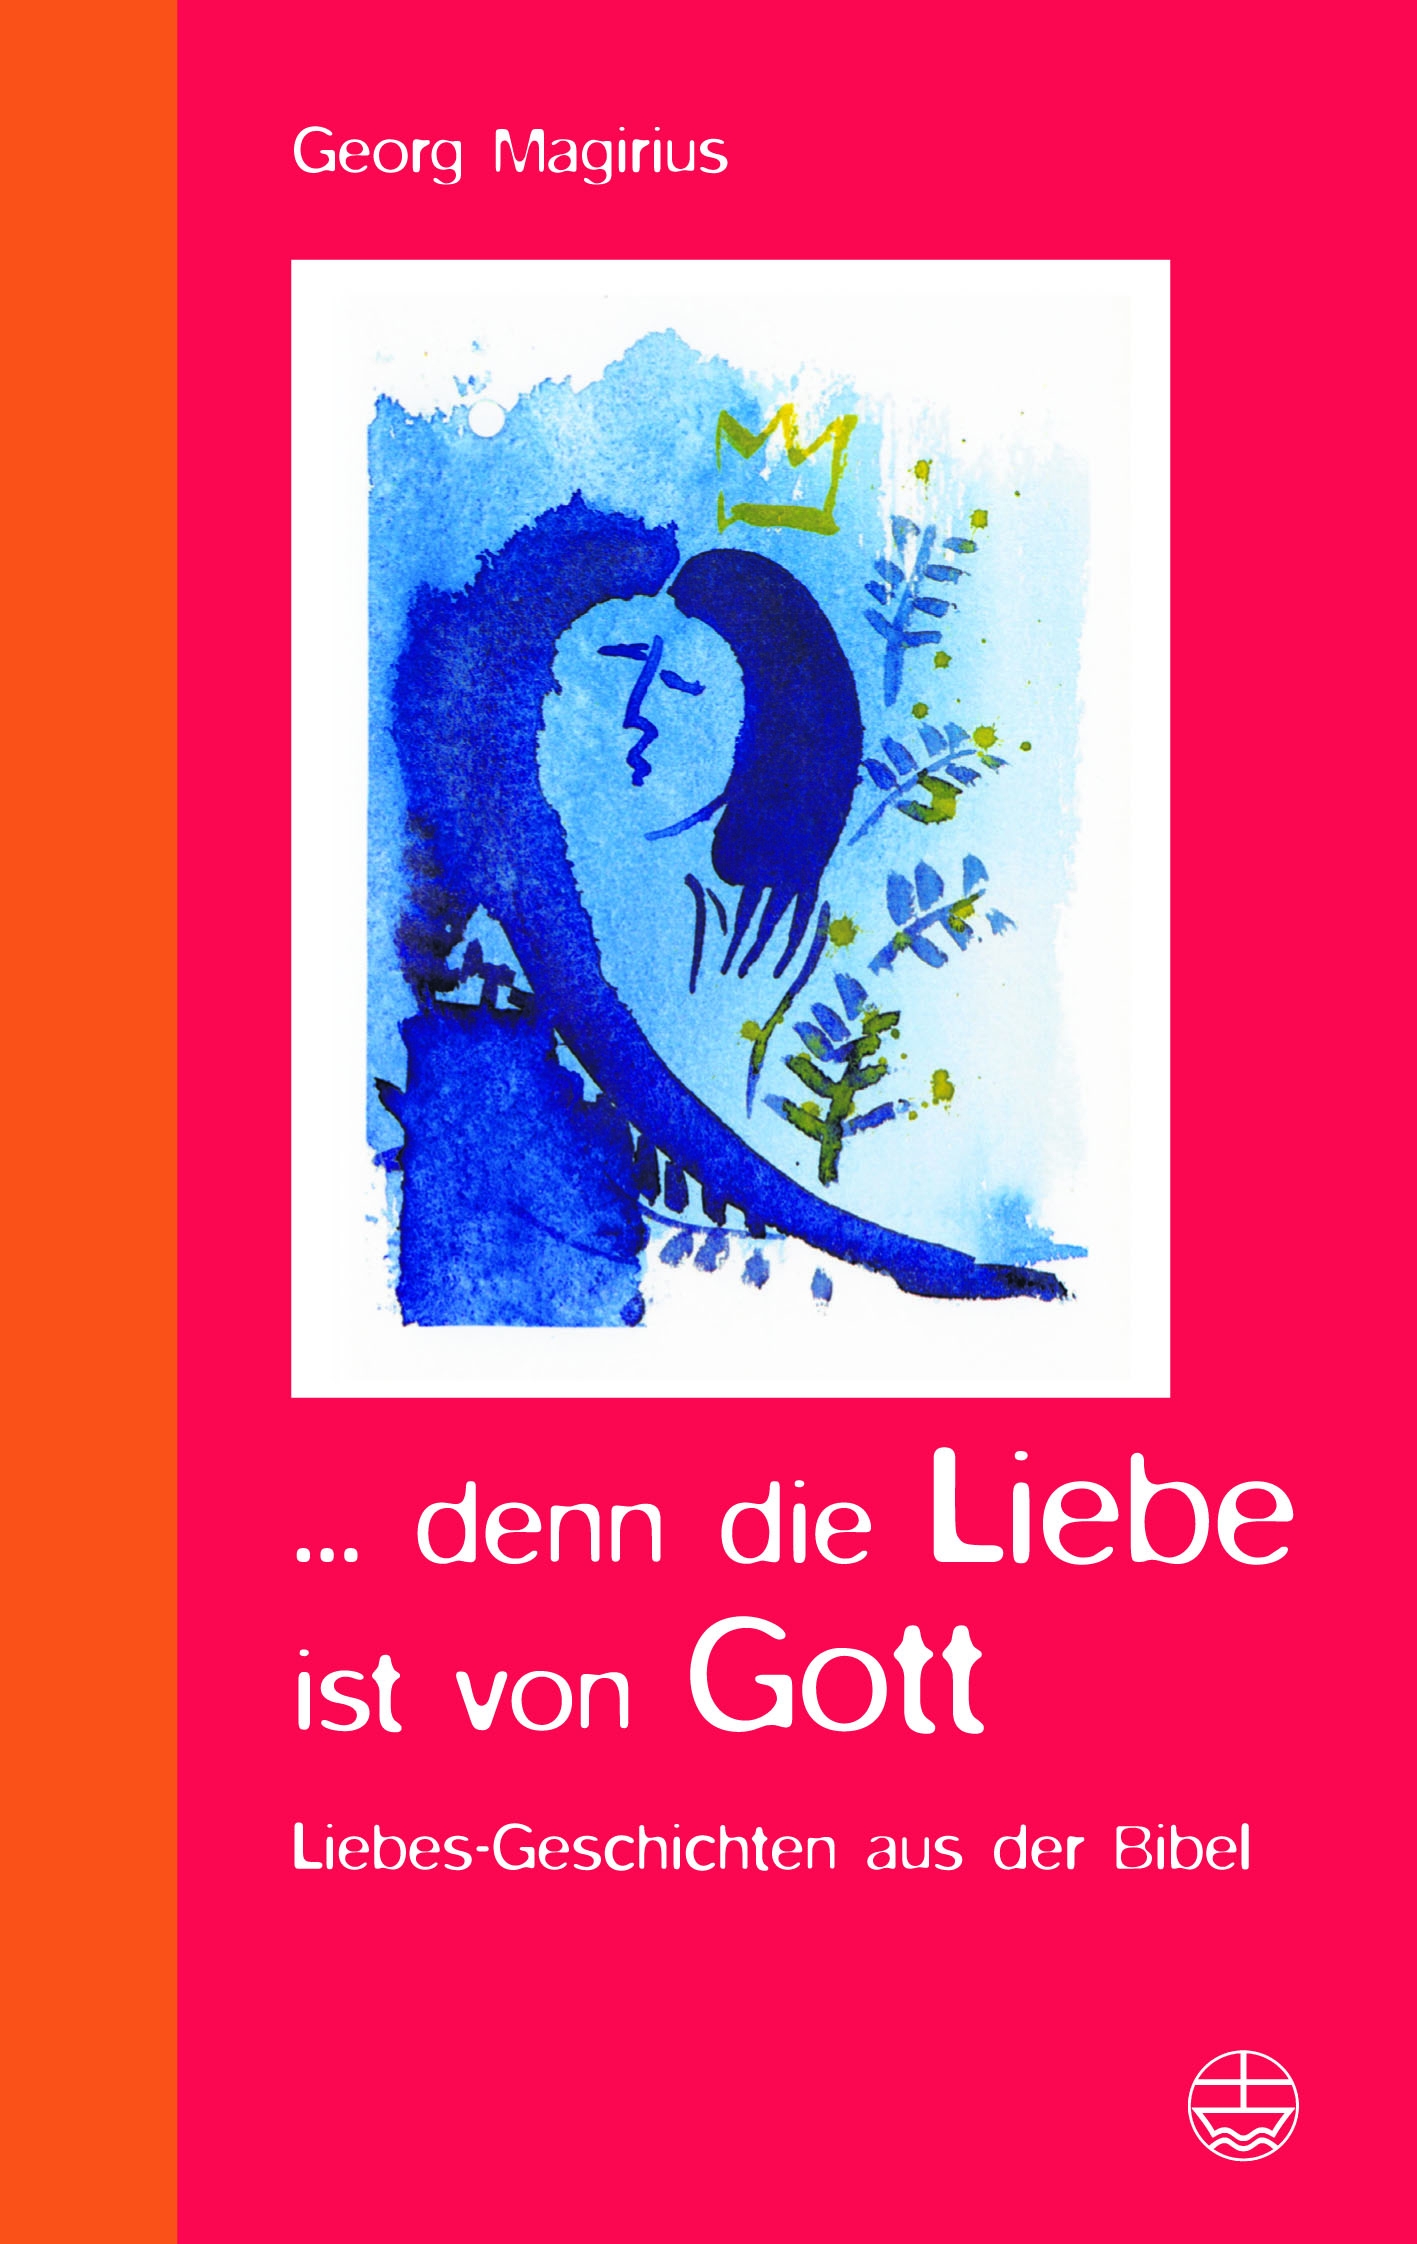 Cover des Buches "... denn die Liebe ist von Gott" - aus diesem Buch refereirt Georg Magirius in Kaiserslautern über Komplexe, Liebe und Intrigen